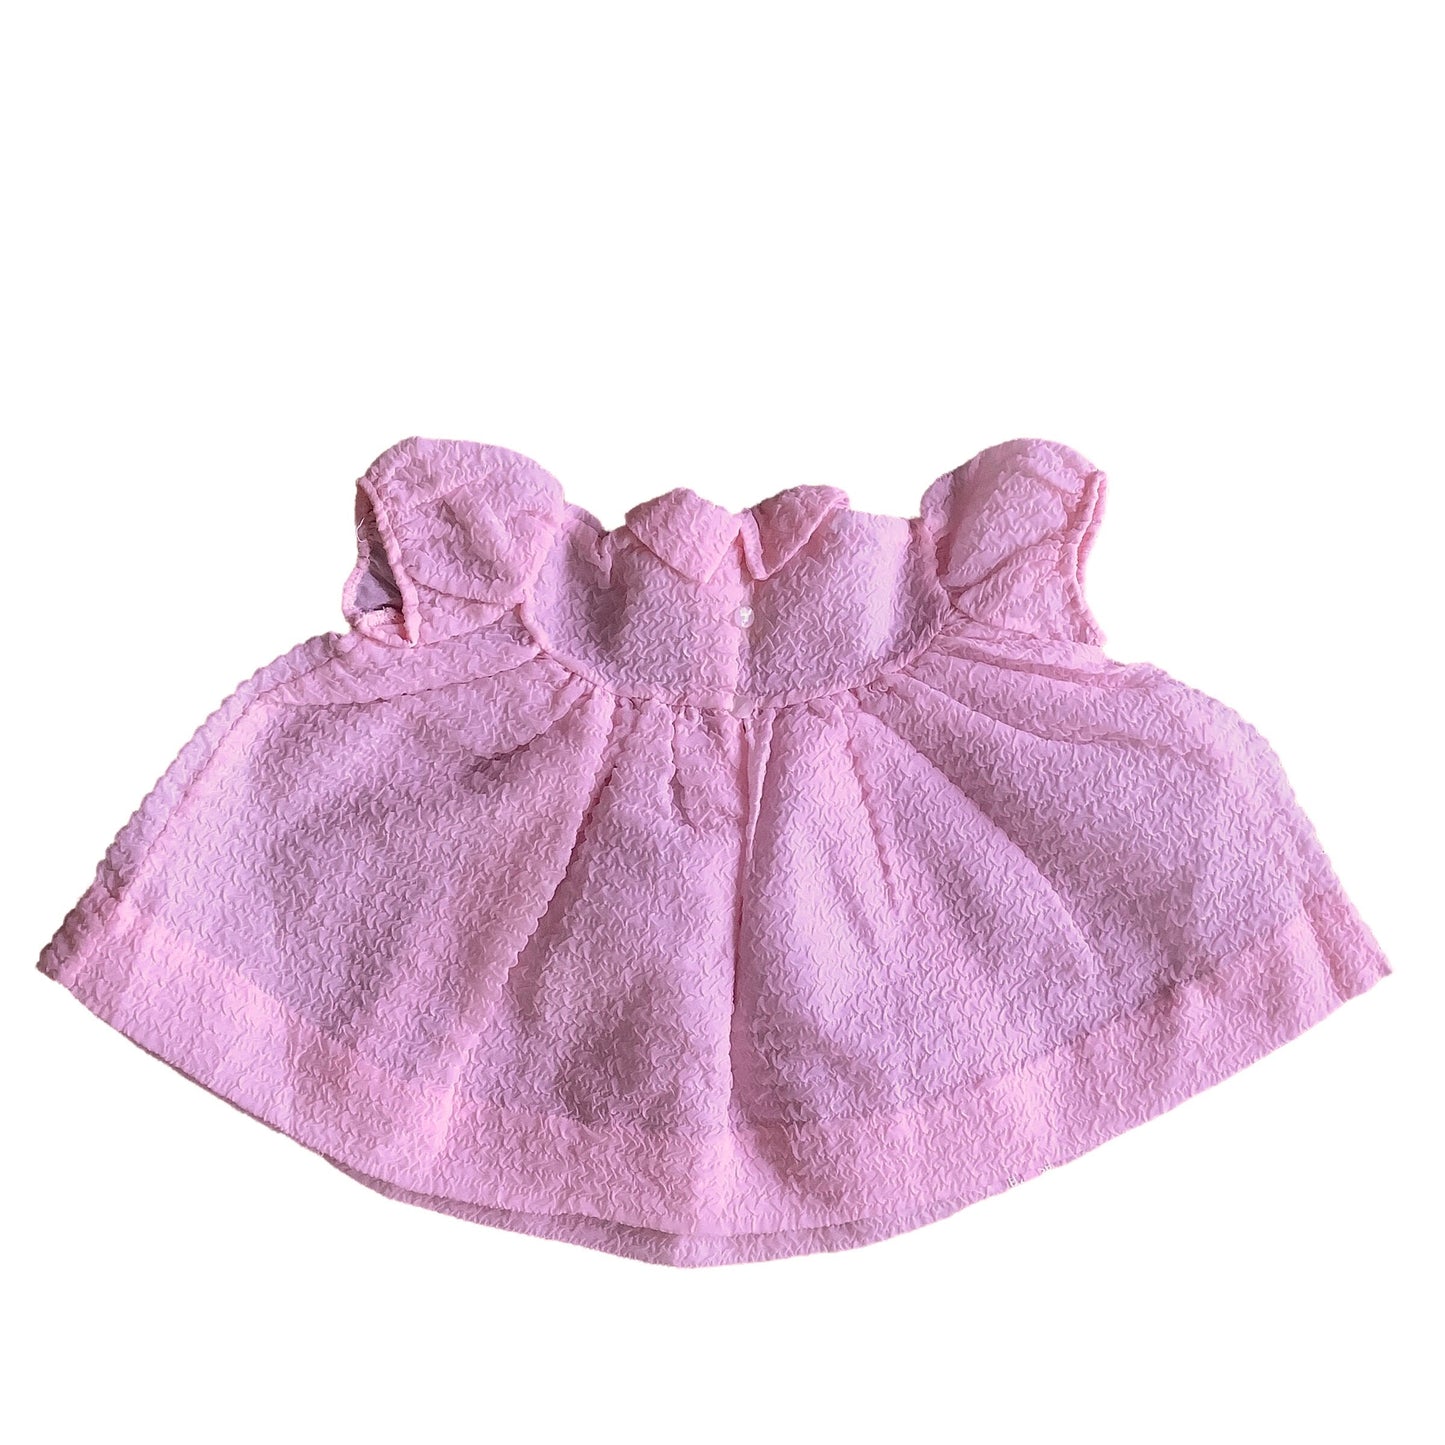 1960s Pink Sheer Dress / 3-6 Months